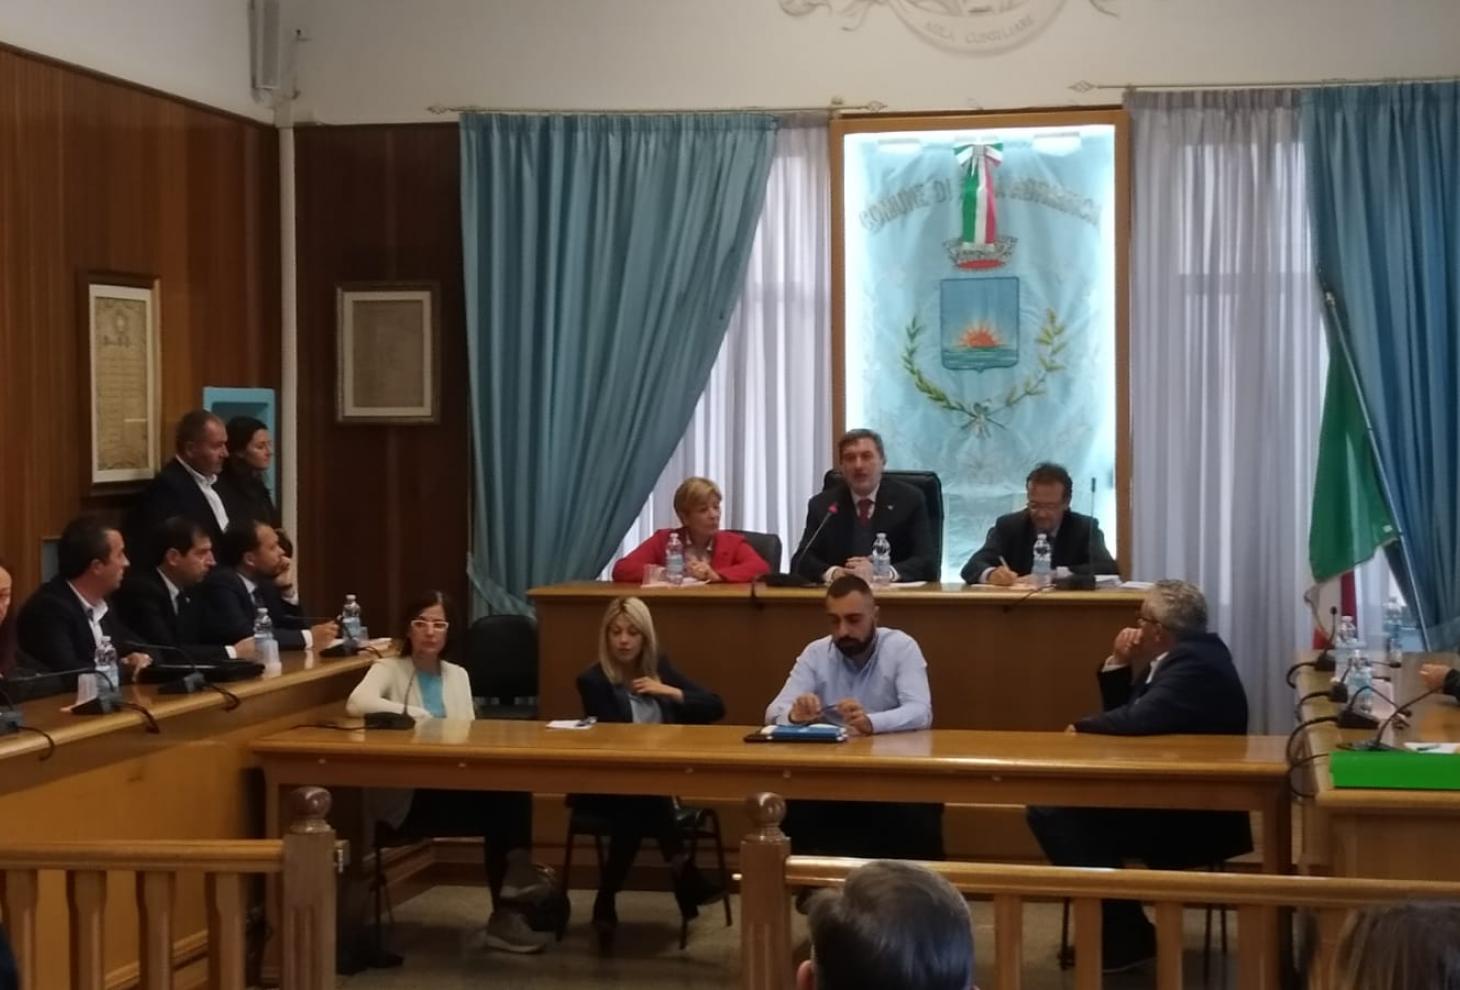 Nella foto da sinistra il sindaco Casciotti, al centro il presidente Marsilio ed a destra il sottosegretario D'Annuntiis